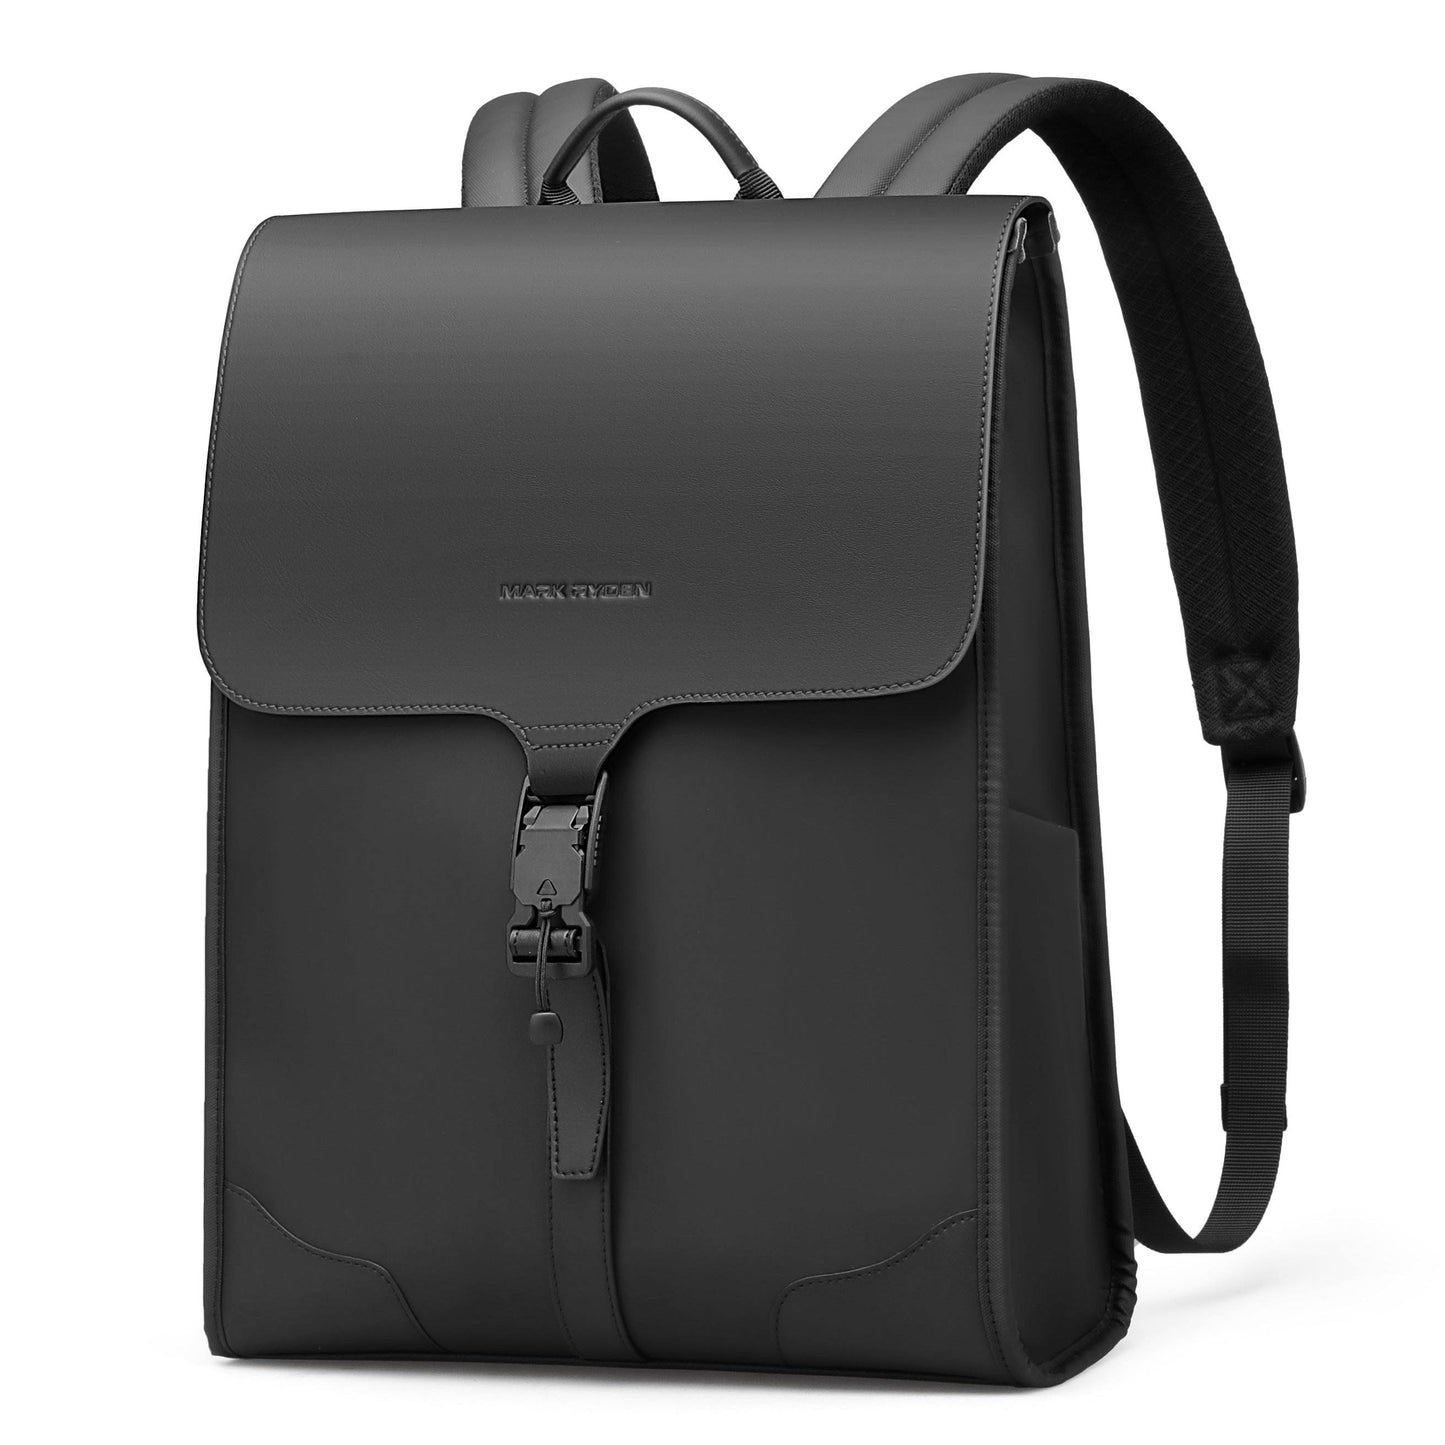 Ryden Camden | Daily & Business Professional Laptop Backpack Black | Travel Backpack | Travel Backpack